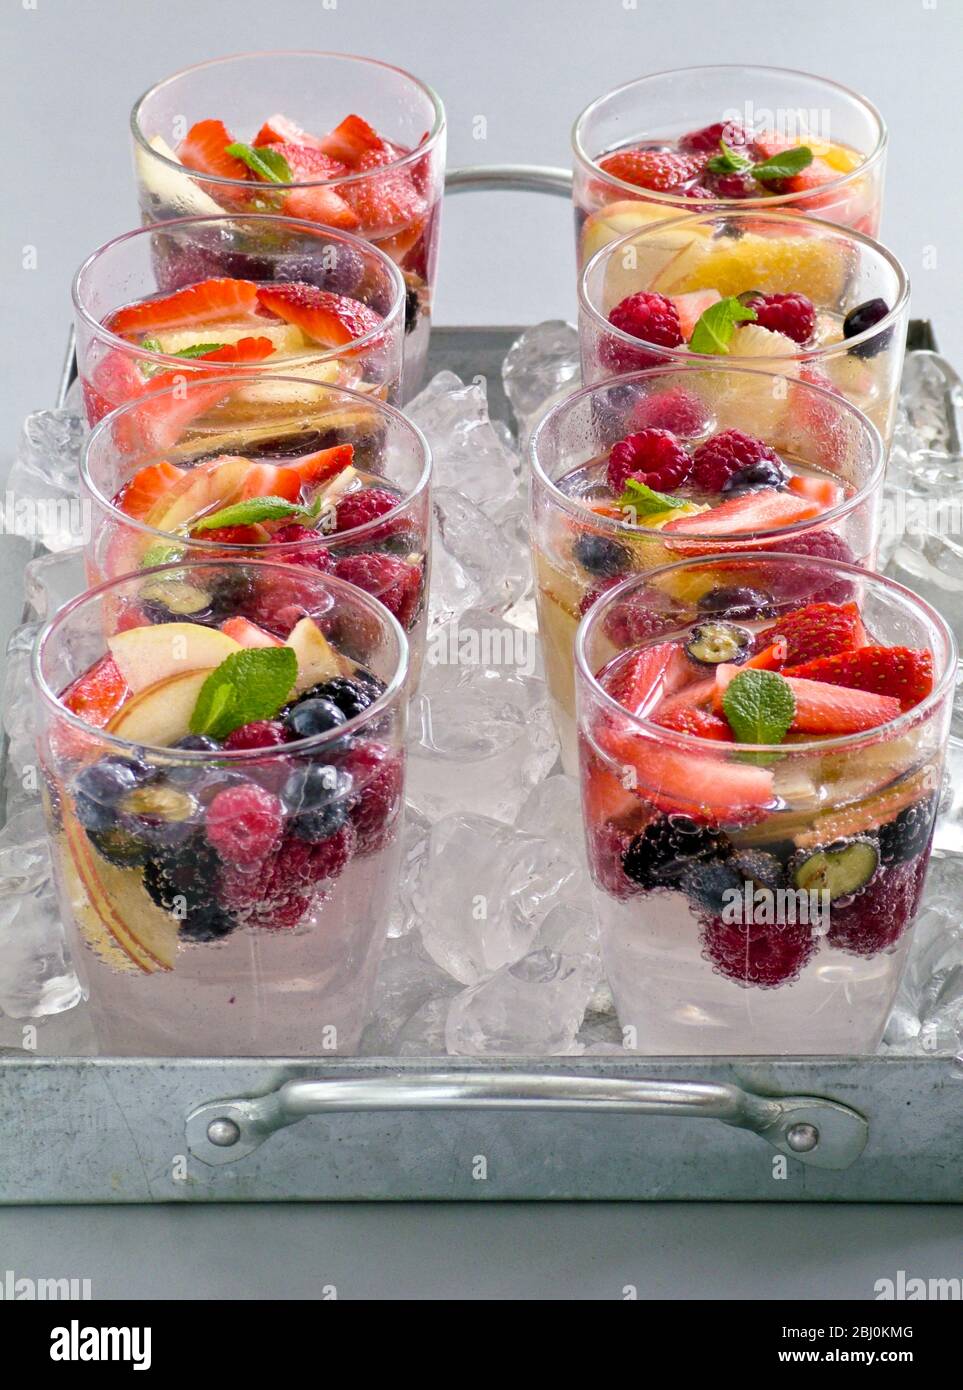 Mineralwasser mit frischem Obst und Beeren in Gläsern Sittin gon zerkleinerten Eis auf Metallschale. - Stockfoto